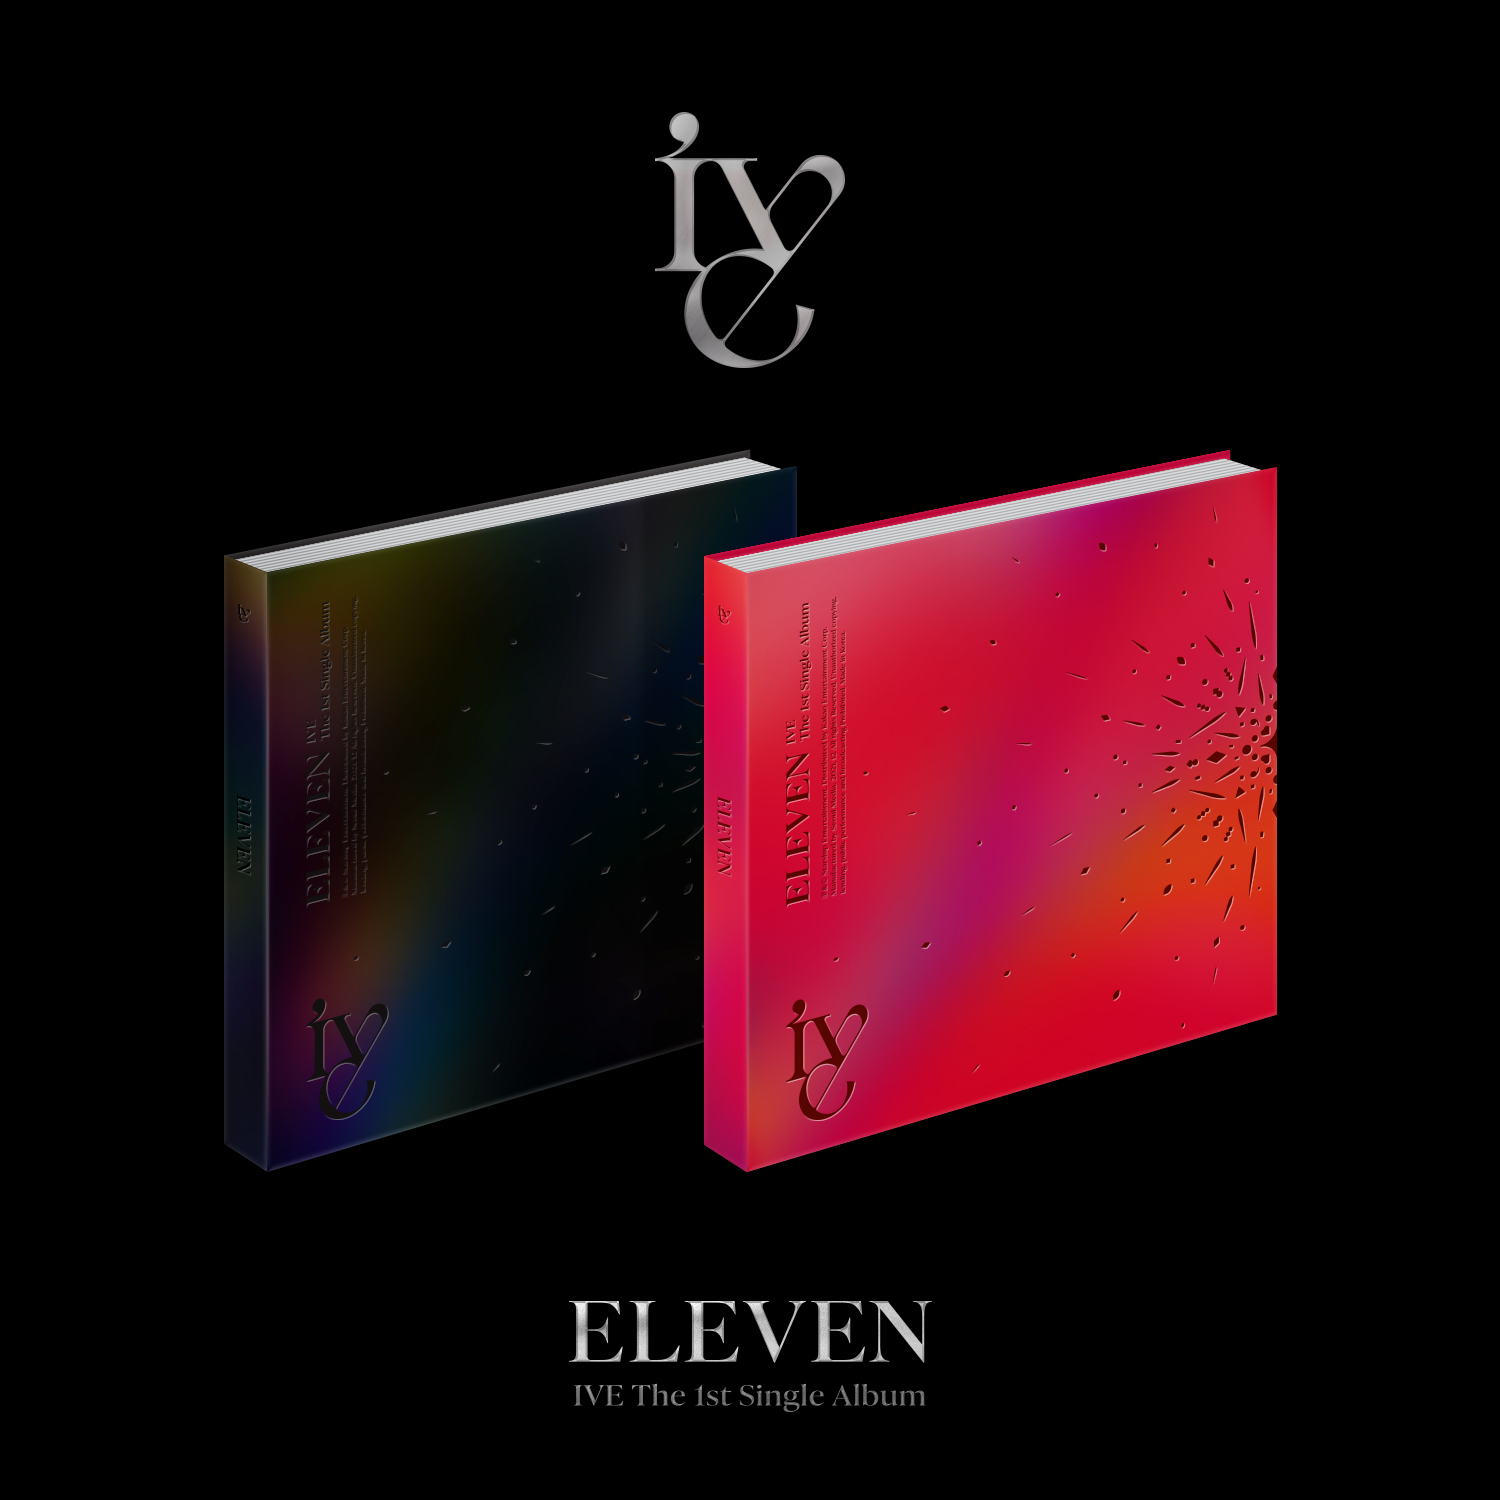 [全款 普特专] [活动商品] IVE - The 1st 单曲专辑 [ELEVEN] (随机版本)_安宥真吧